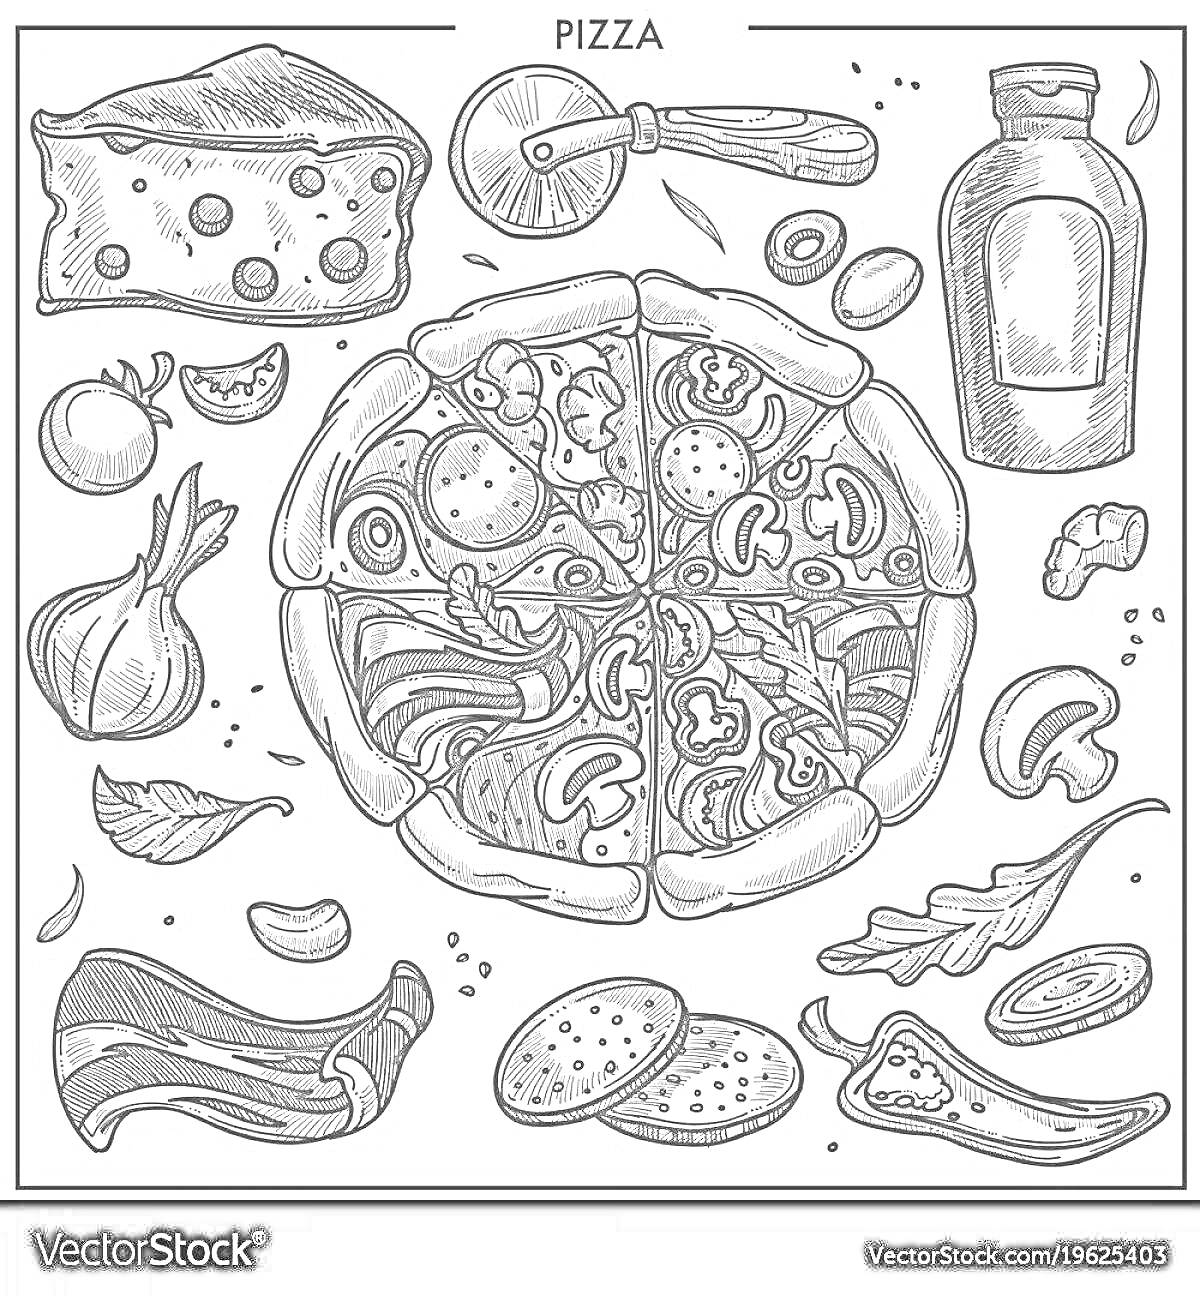 Пицца и ингредиенты: кусок сыра, нож для пиццы, бутылка с соусом, помидоры, лук, гриб, салатные листья, баклажан, две колбаски, ароматная трава, чеснок, кусок мяса